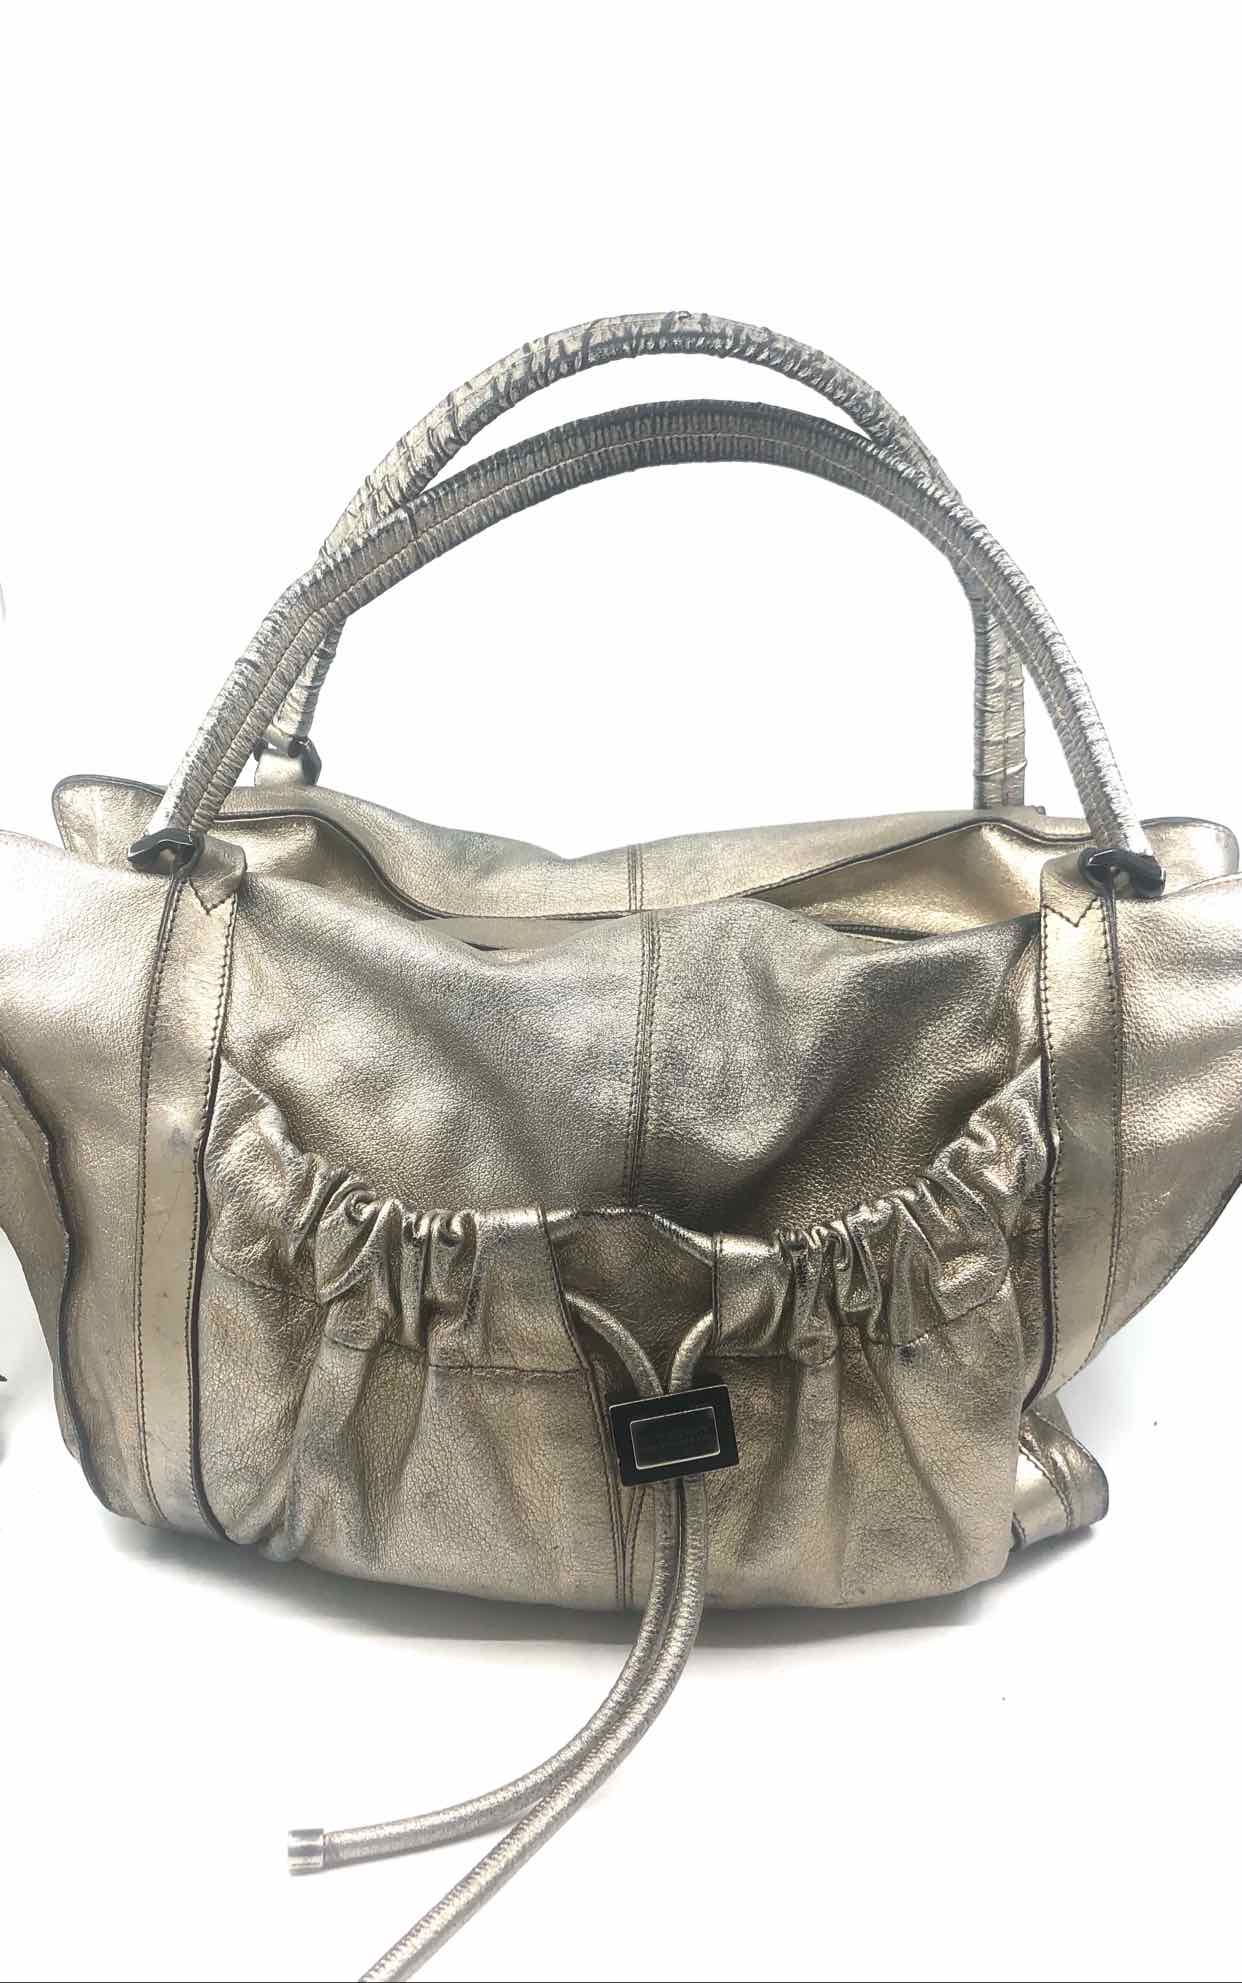 Actualizar 58+ imagen burberry metallic handbag